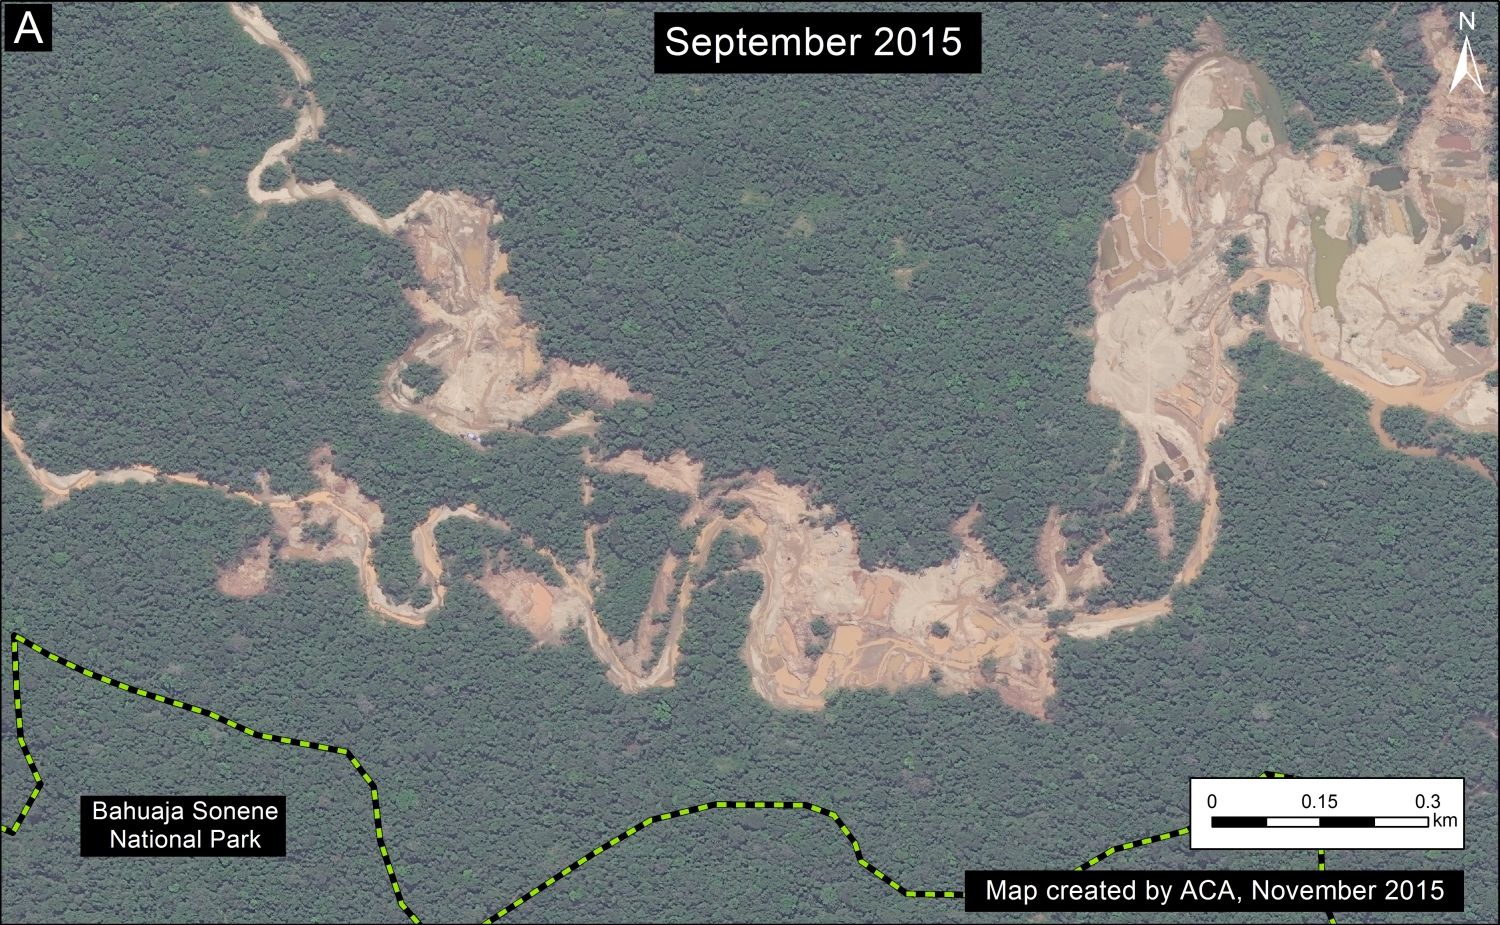 Image 19b. Zoom de la deforestación de minería aurífera cerca el Parque Nacional Bahuaja Sonene (ver Cuadro A en Imagen 19a por el contexto). Datos: SERNANP, WorldView-2 de Digital Globe (NextView).